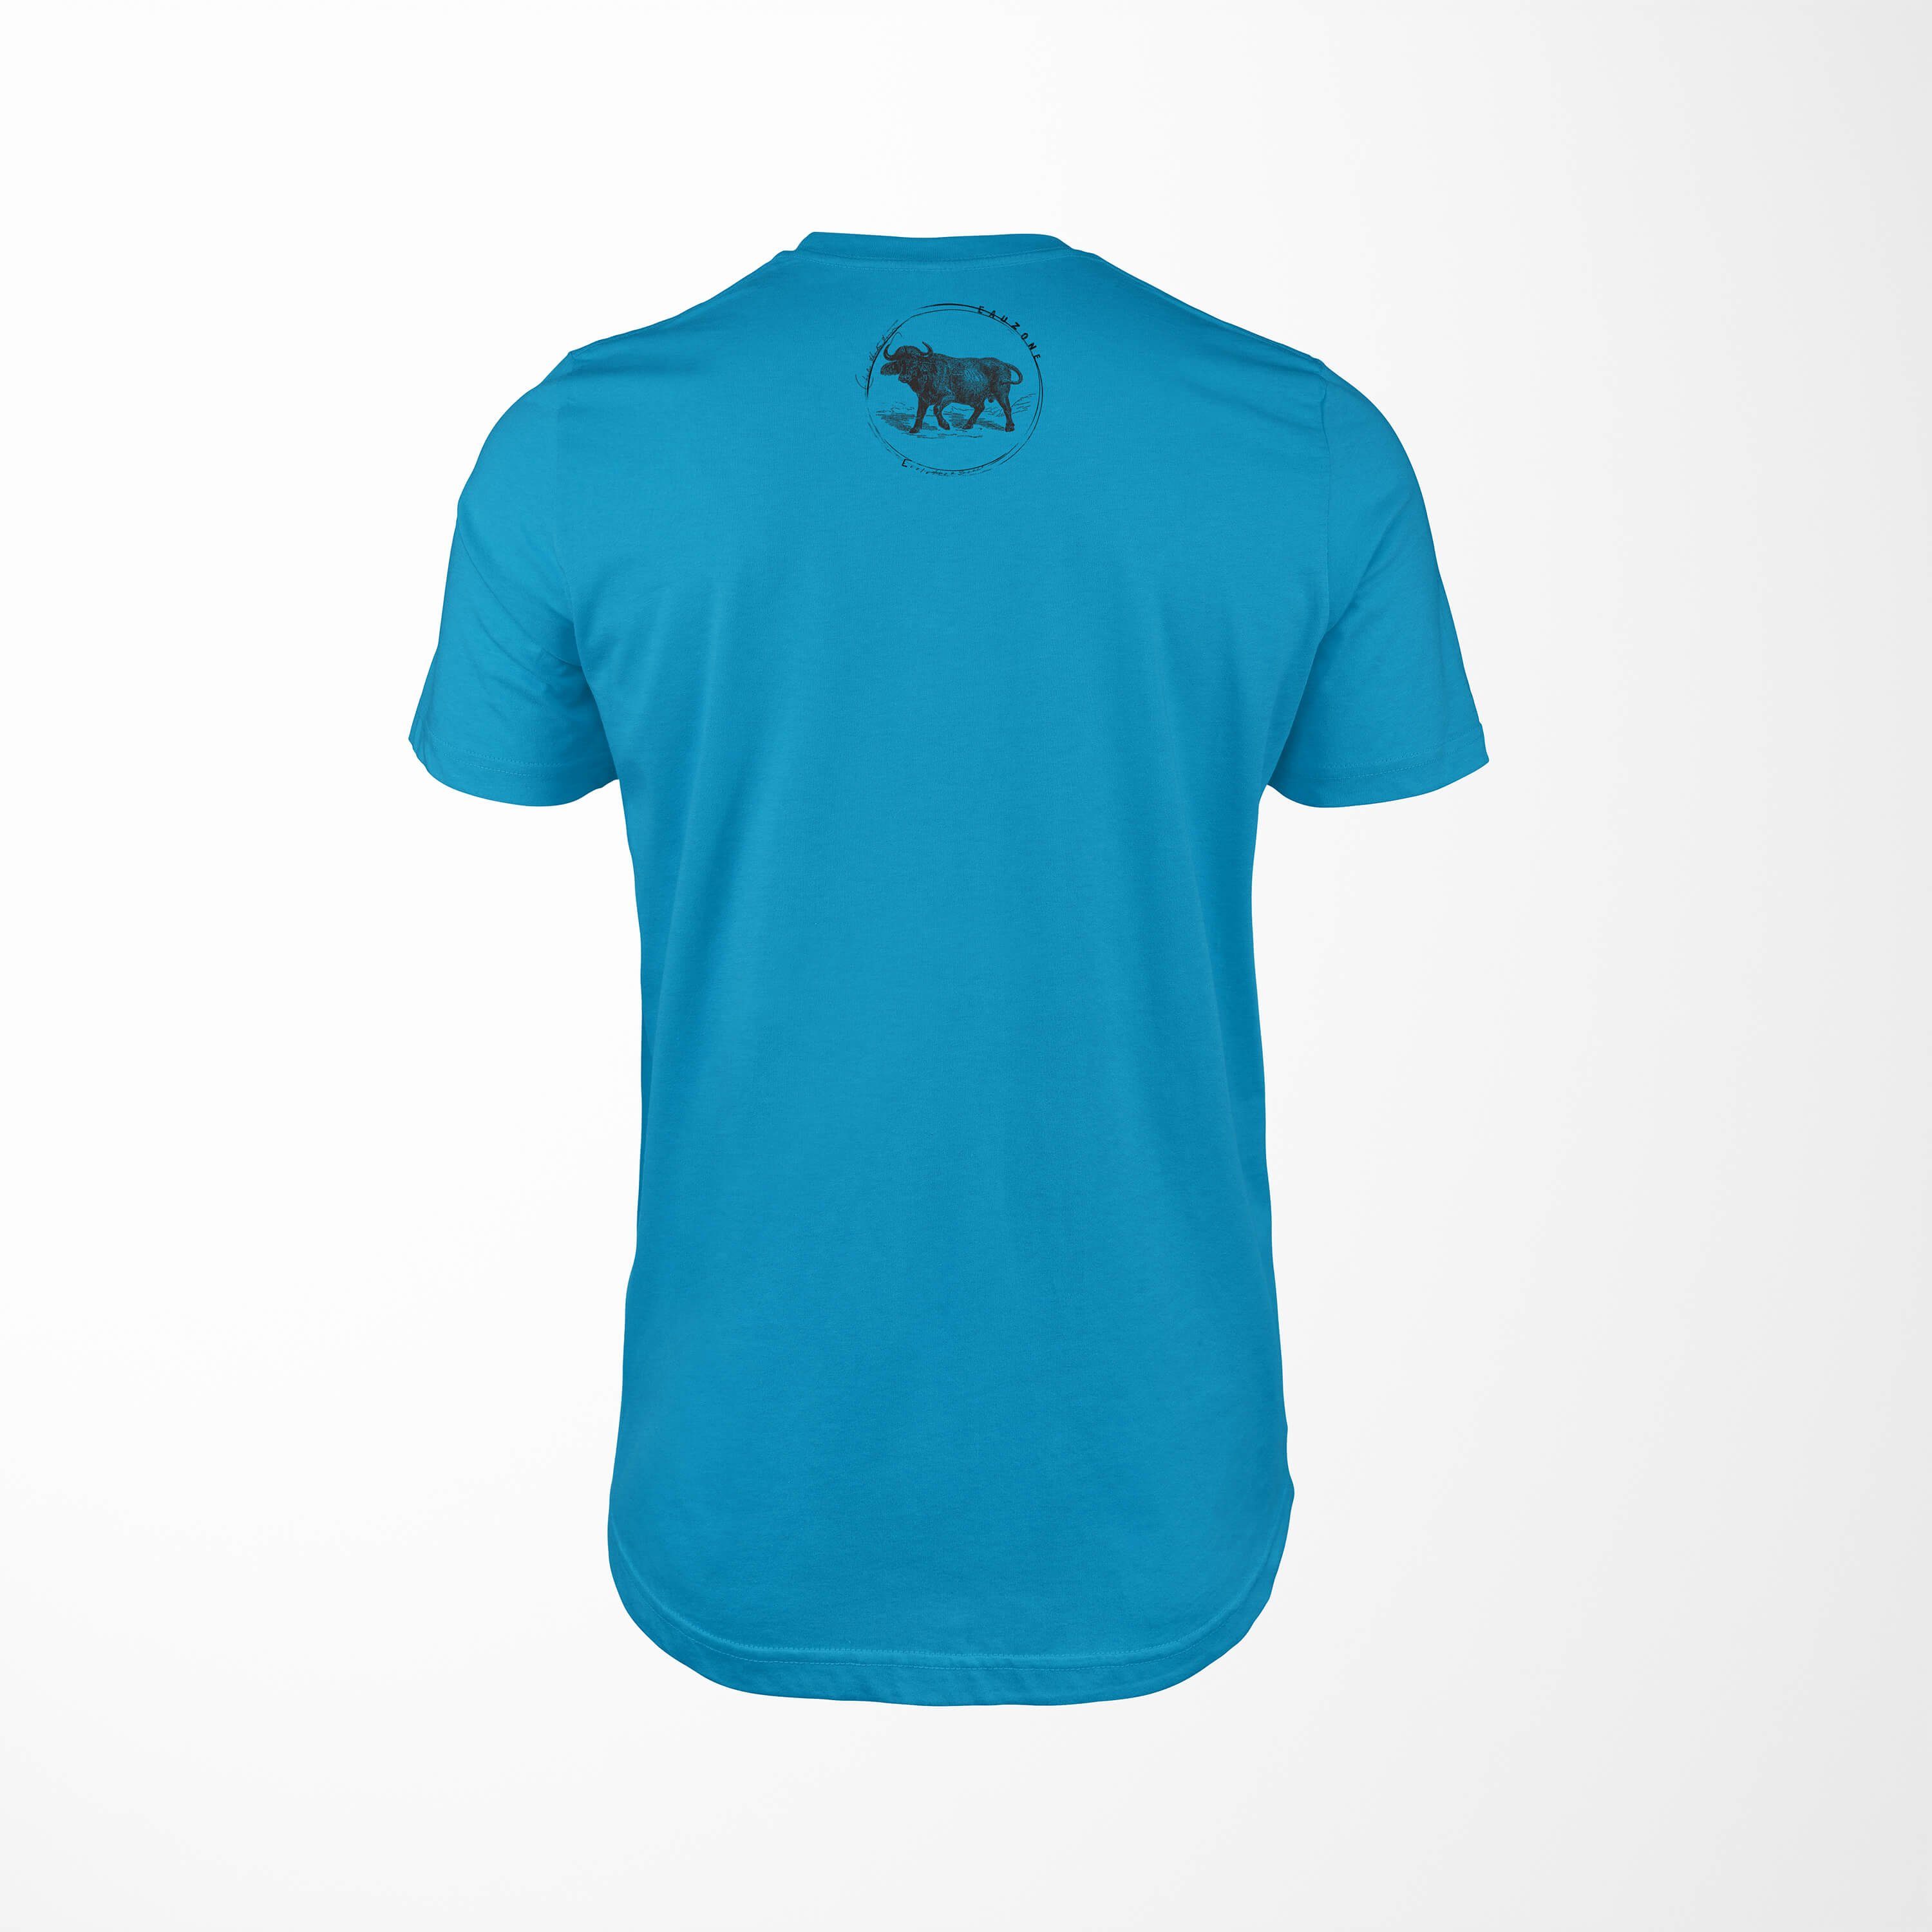 T-Shirt T-Shirt Sinus Atoll Evolution Herren Büffel Art